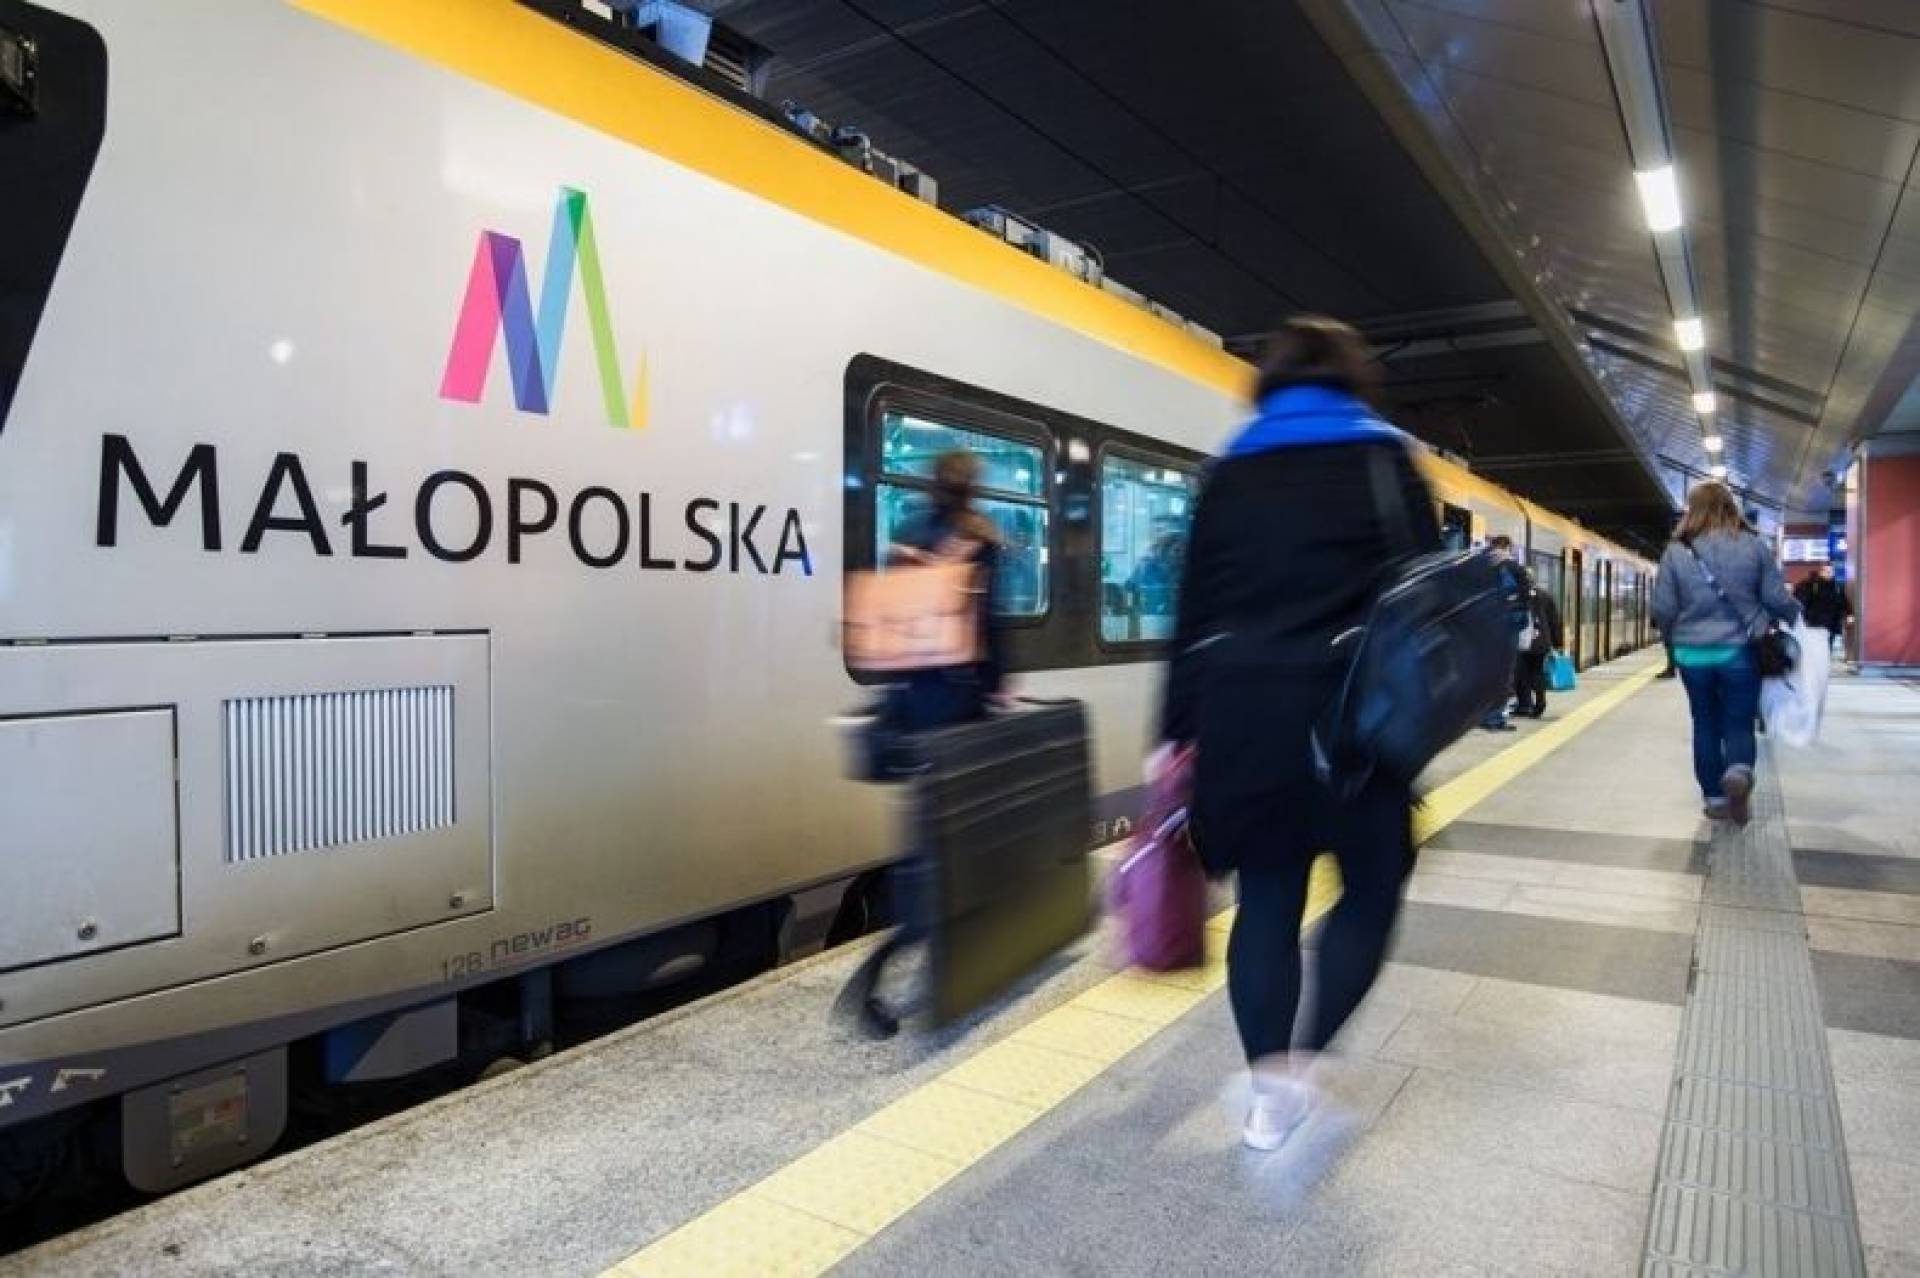 Nowy rozkład jazdy na kolei i spore kłopoty na trasie Wieliczka - Lotnisko